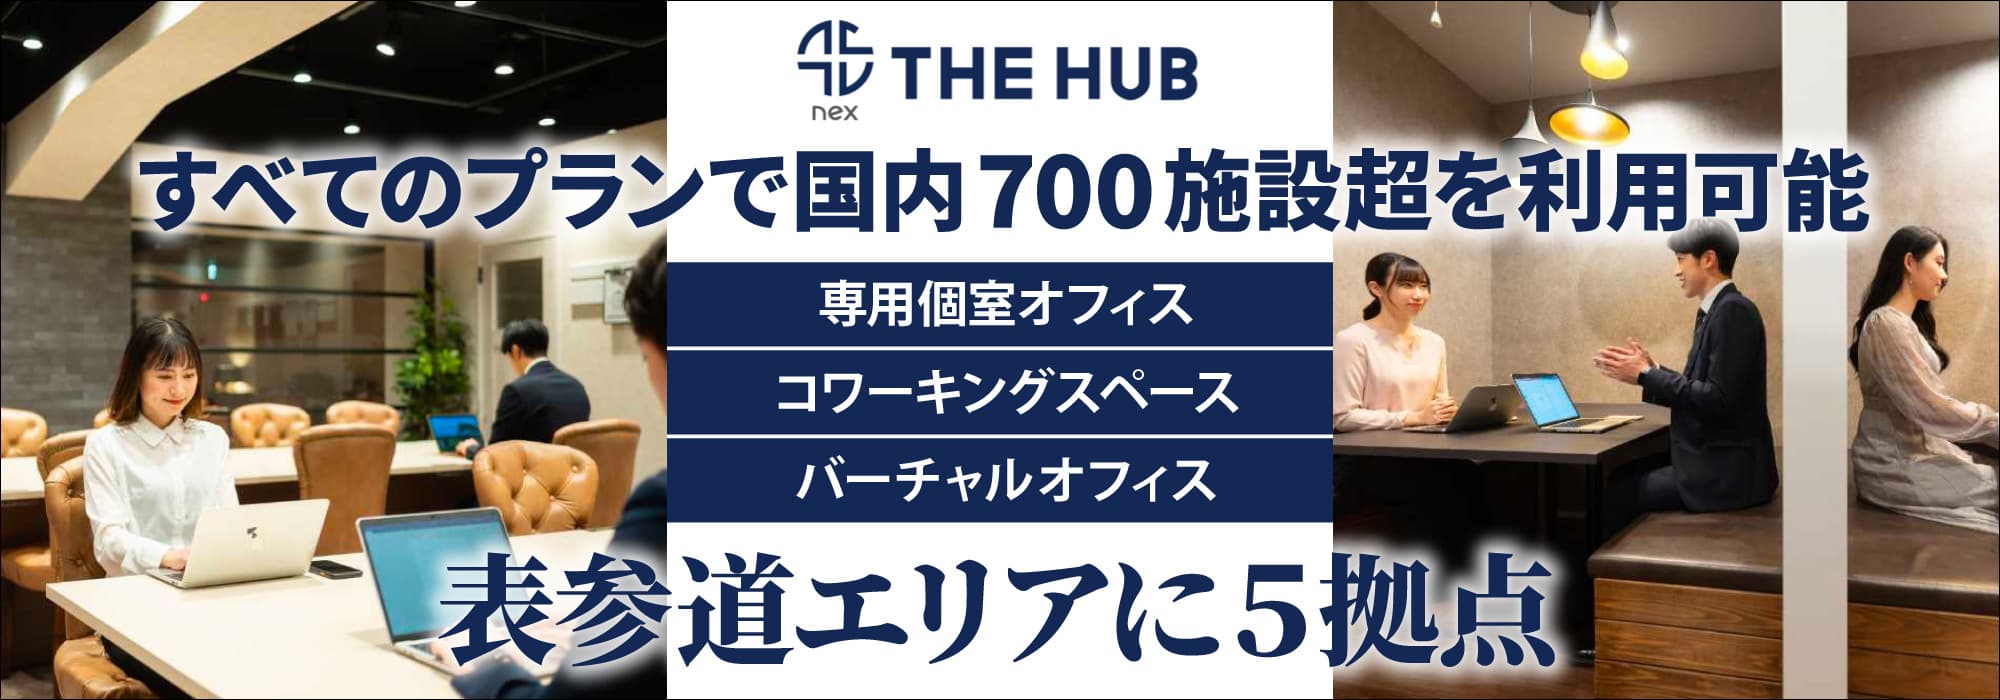 表参道エリアに５拠点、創造力と生産性を刺激するレンタルオフィス【THE HUB】すべてのプランで国内700施設超を利用可能